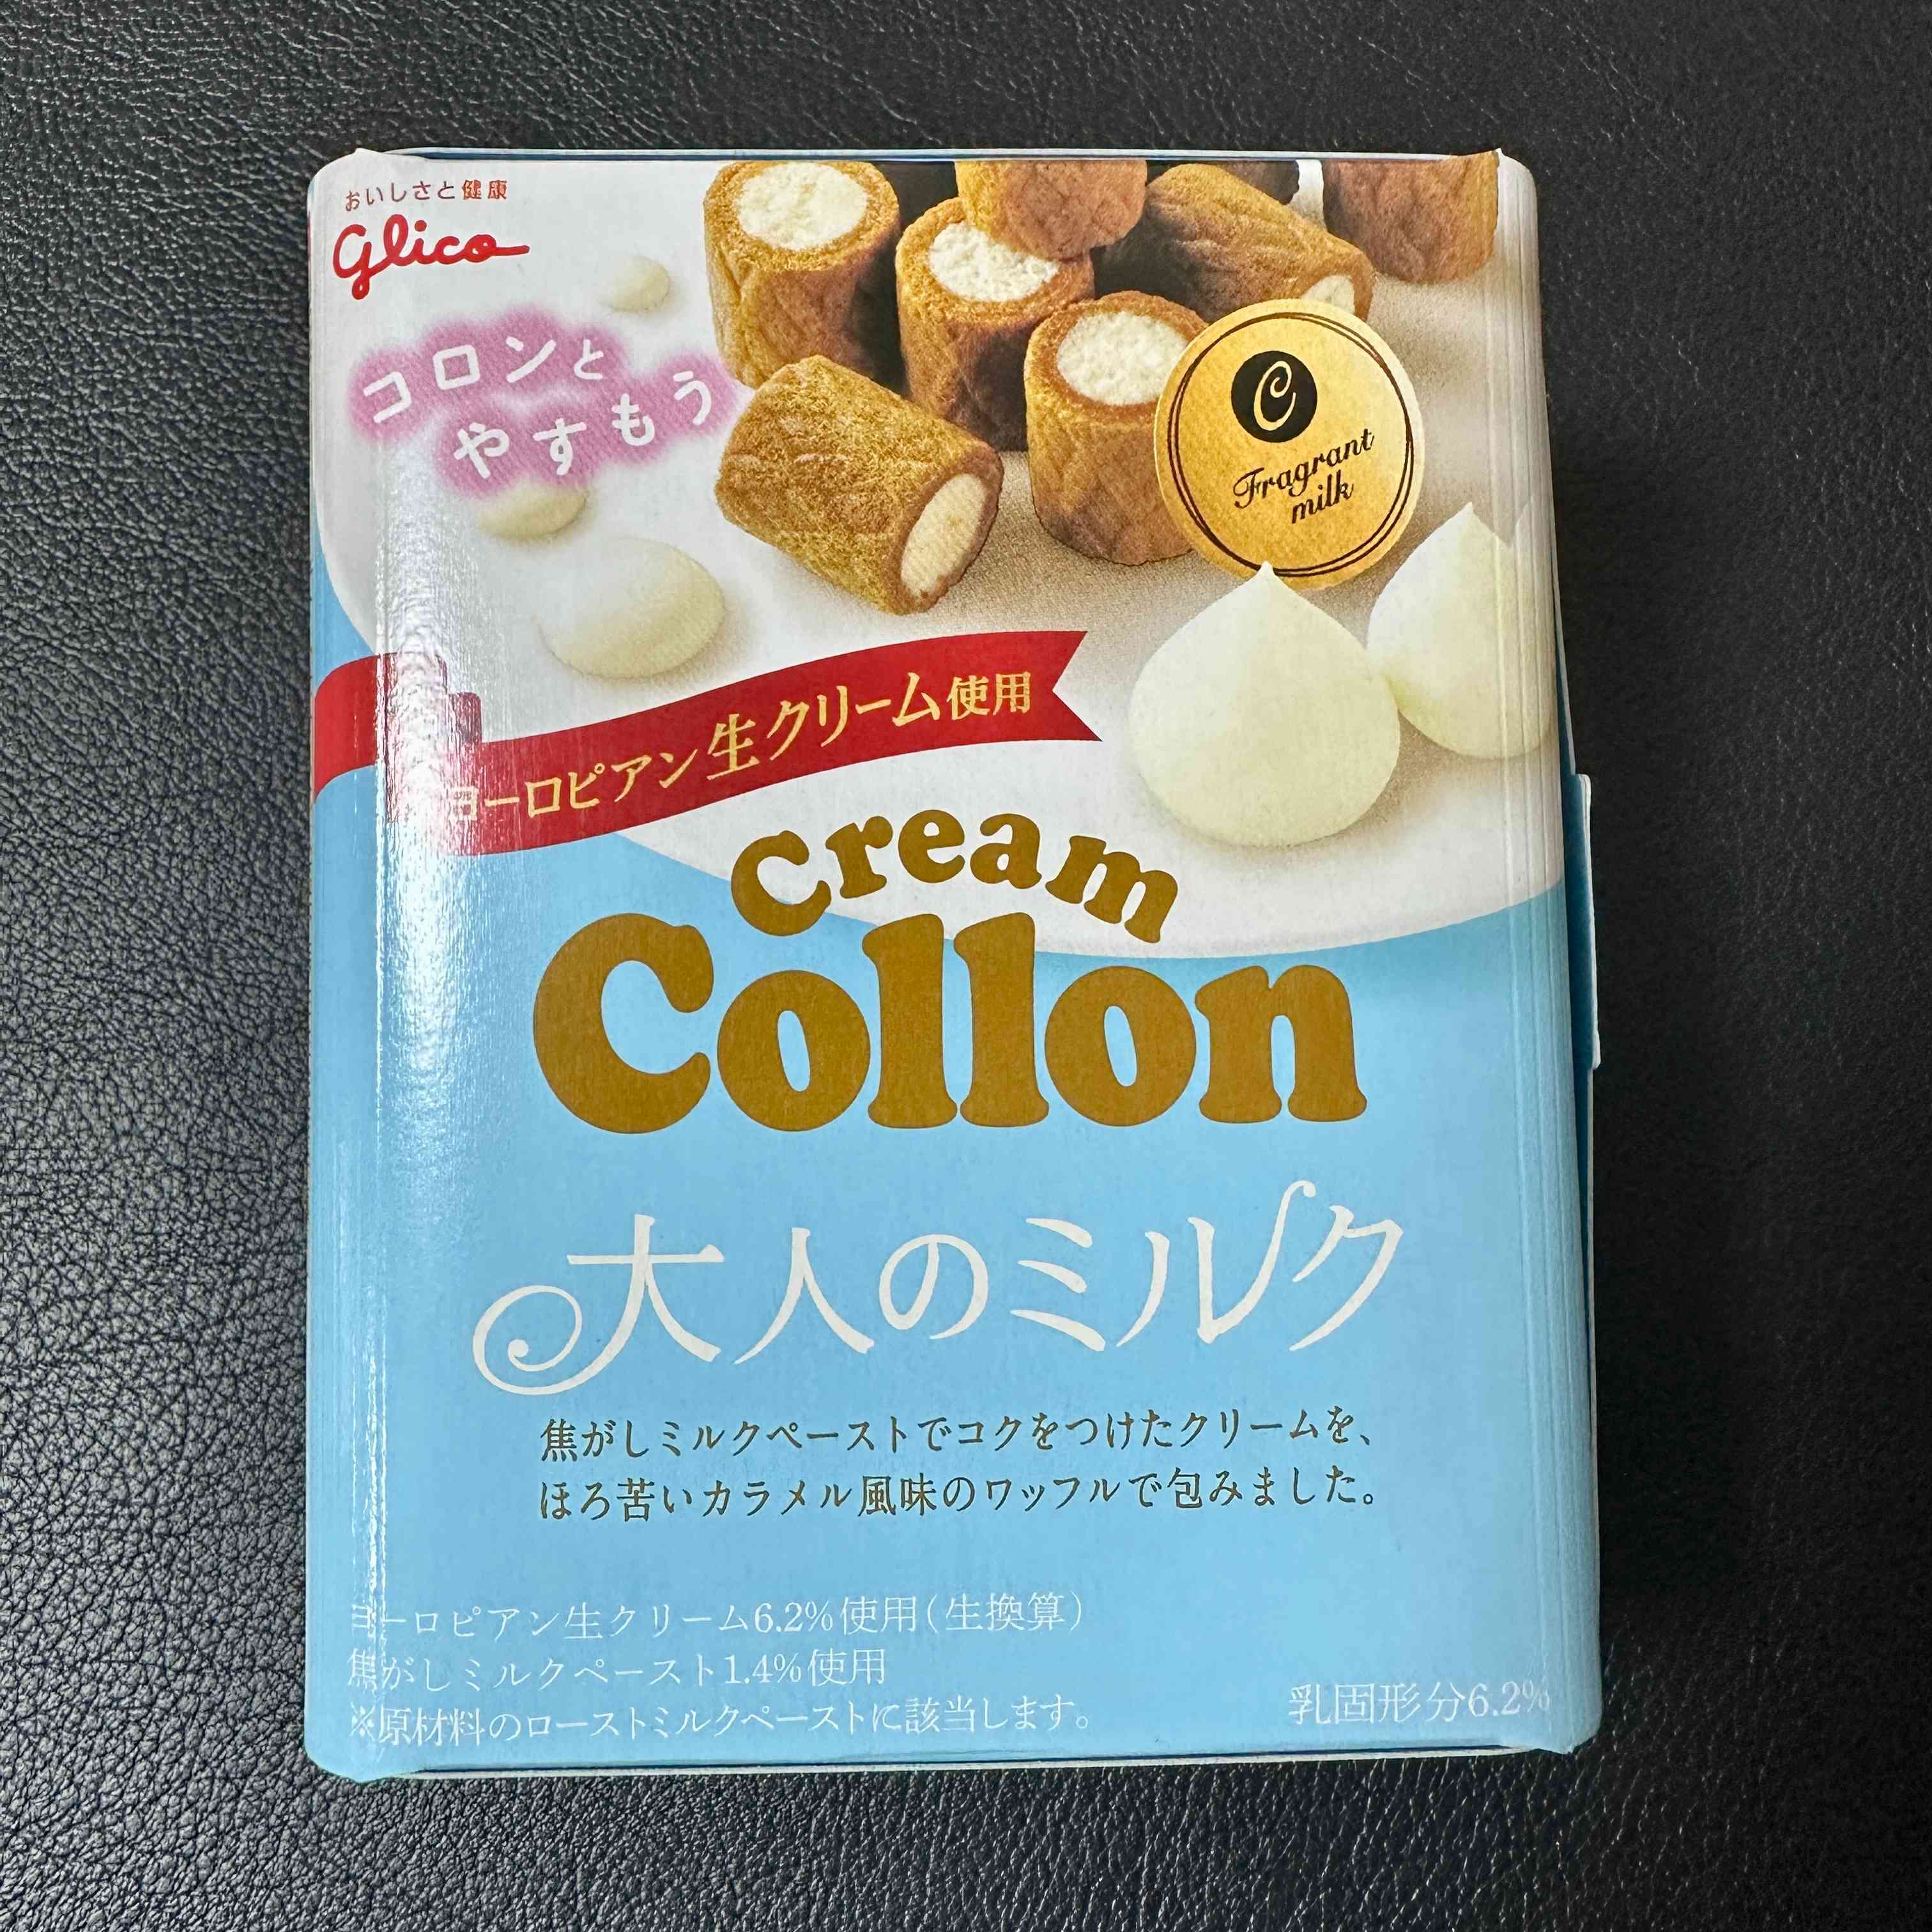 【glico】Cream Collon Adult Milk　80pieces（1case）　3840g